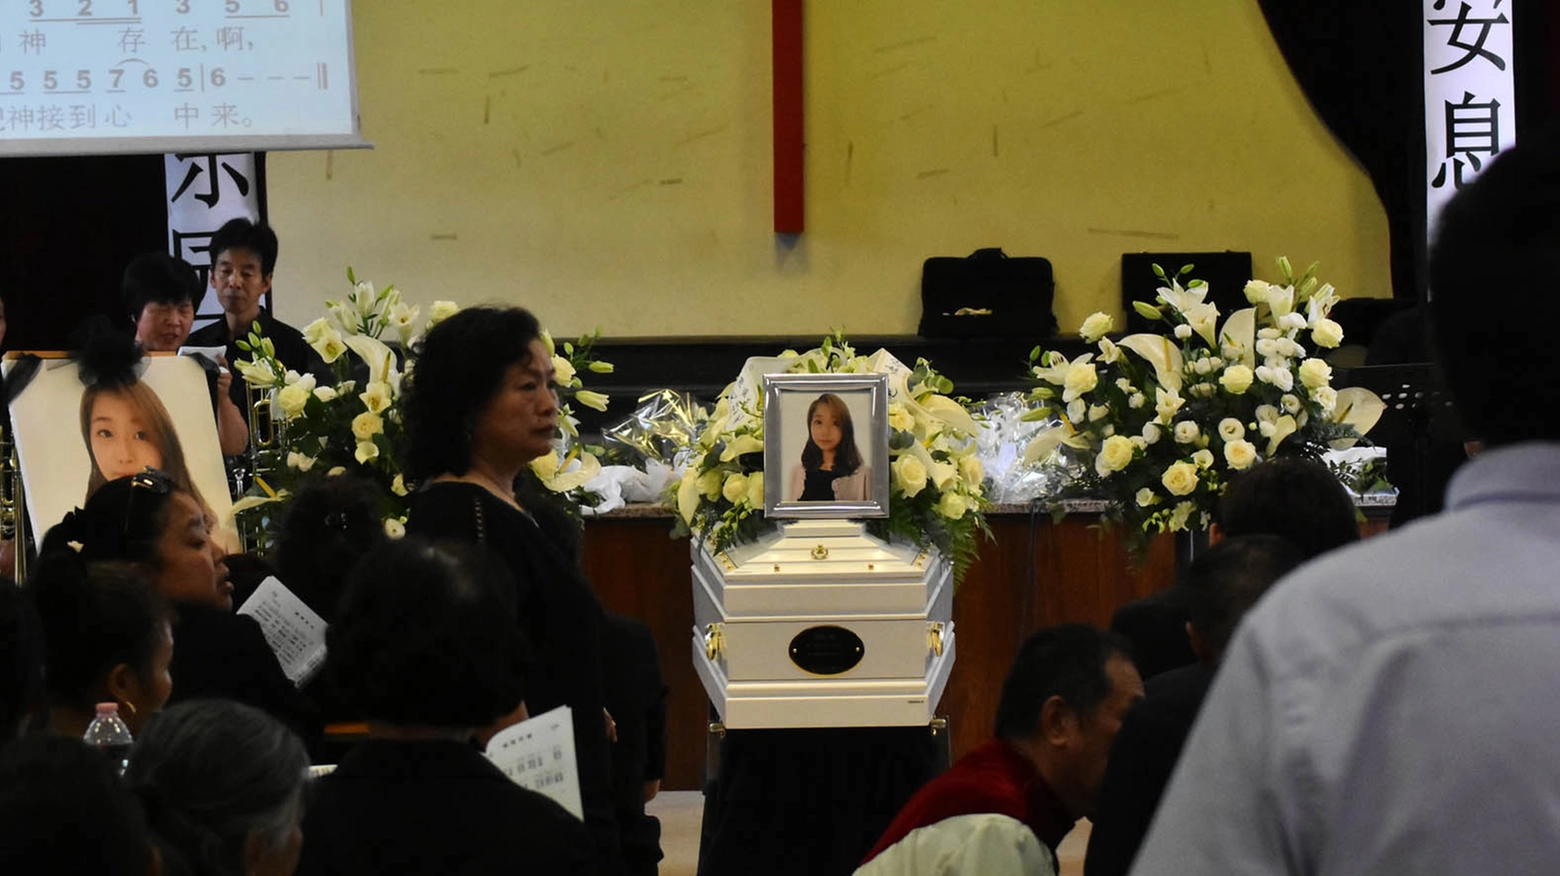 Il funerale della barista uccisa; al centro la foto di Hui Zhou (foto Artioli)